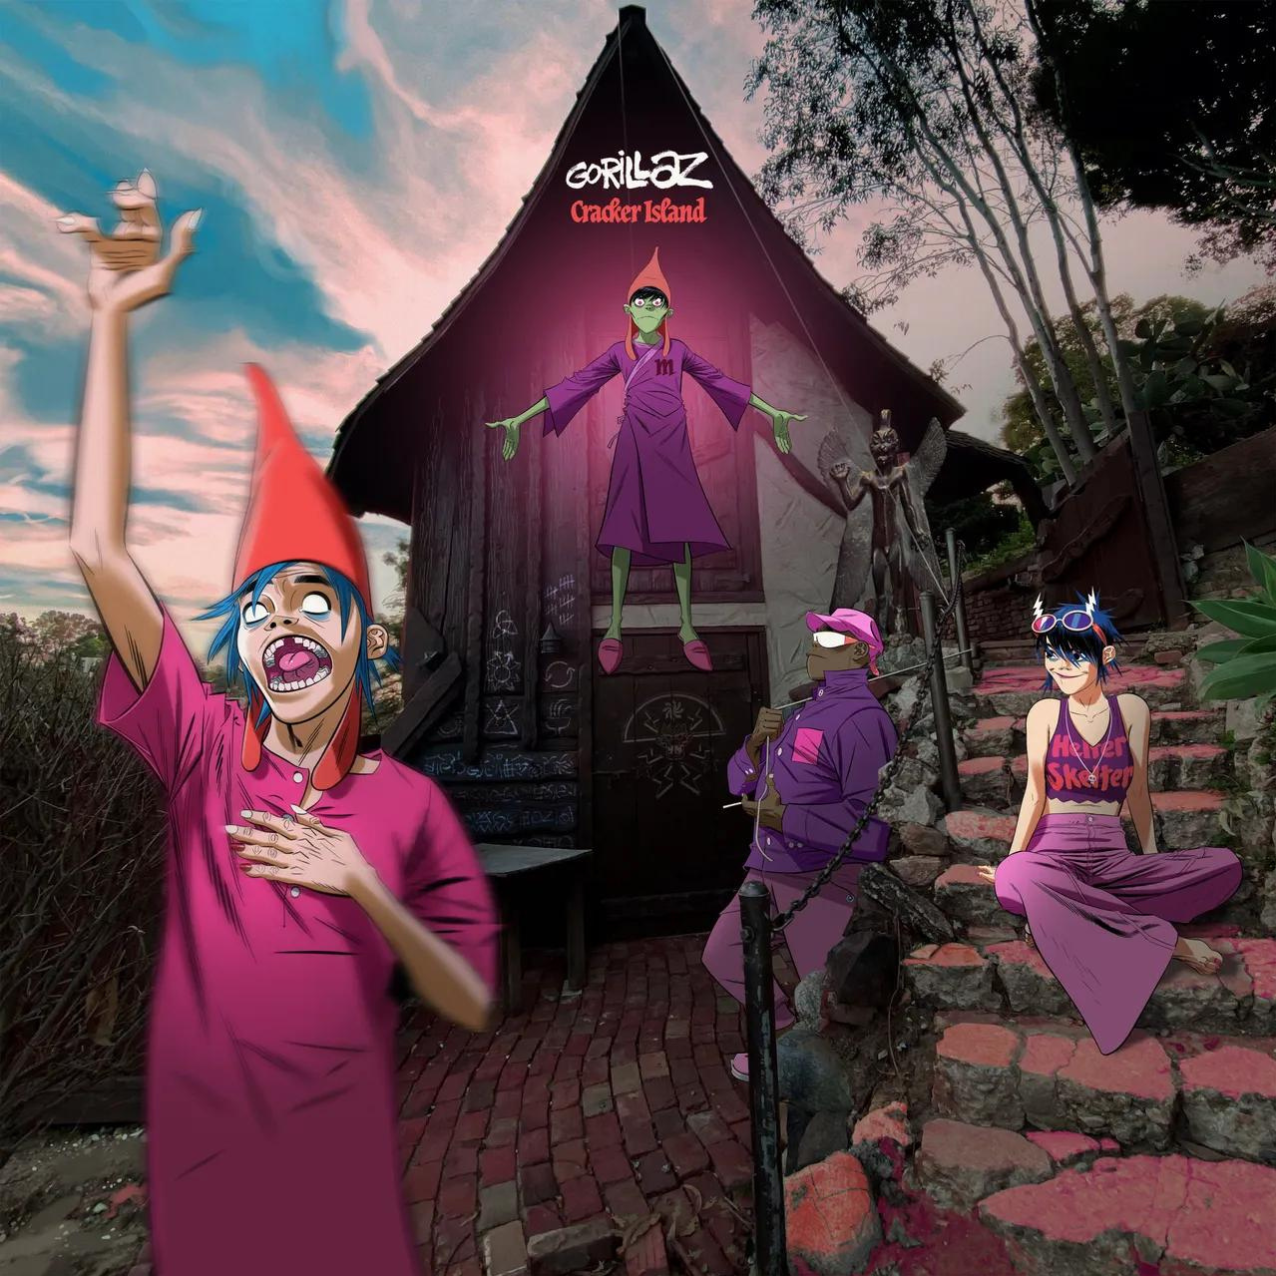 Gorillaz lanza su octavo álbum de estudio "Cracker Island", que incluye una colaboración con Bad Bunny en la canción "Tormenta”